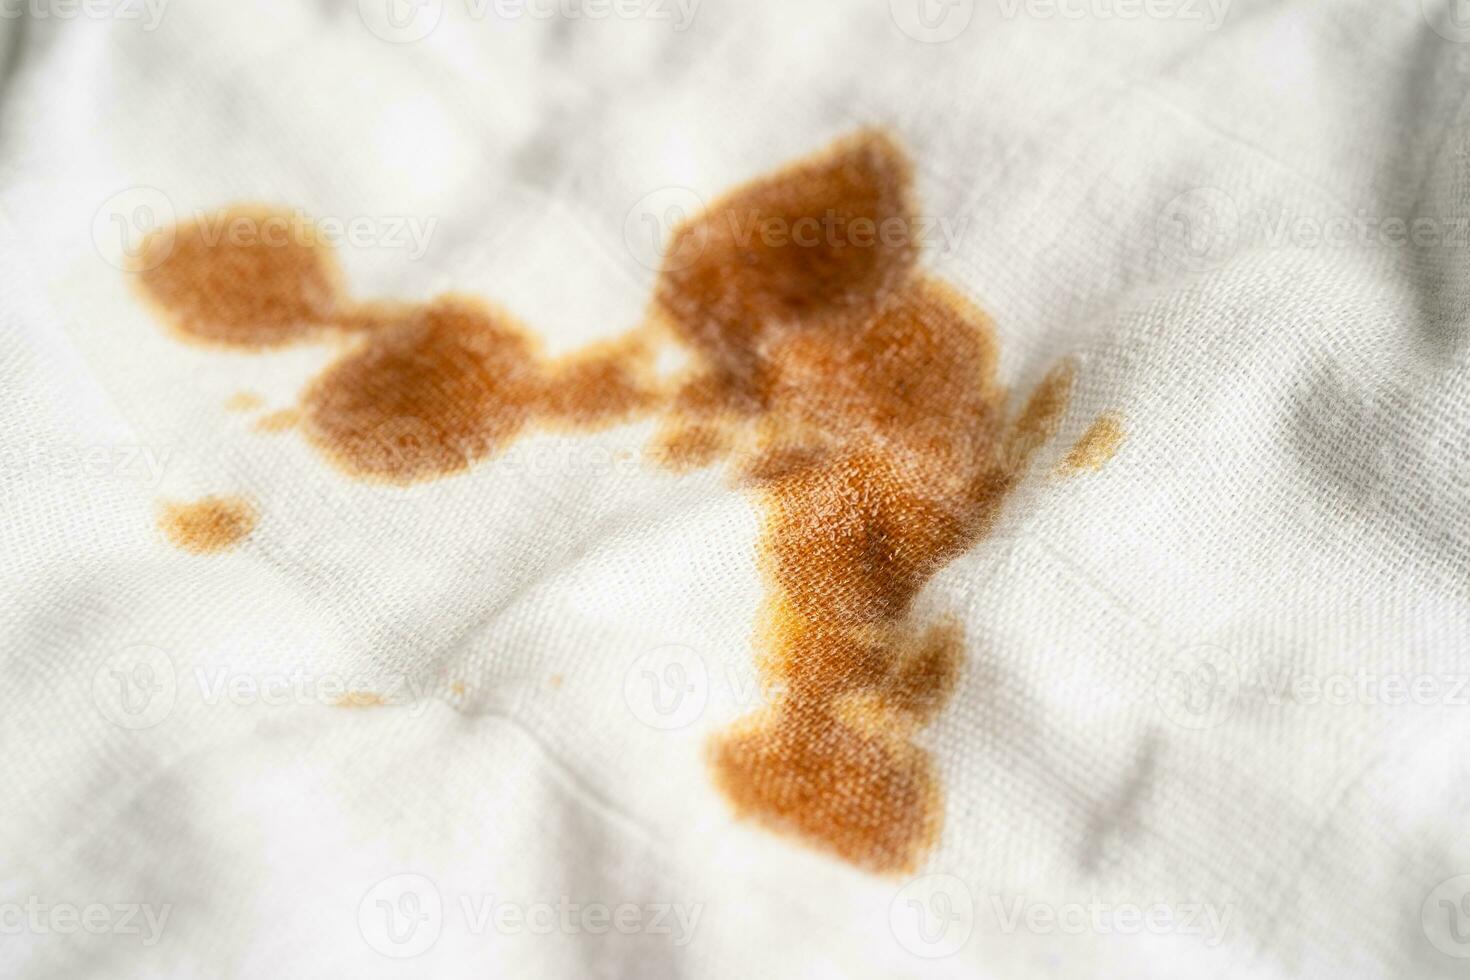 mancha de salsa sucia en la tela para lavar con detergente en polvo, limpieza del concepto de tareas domésticas. foto